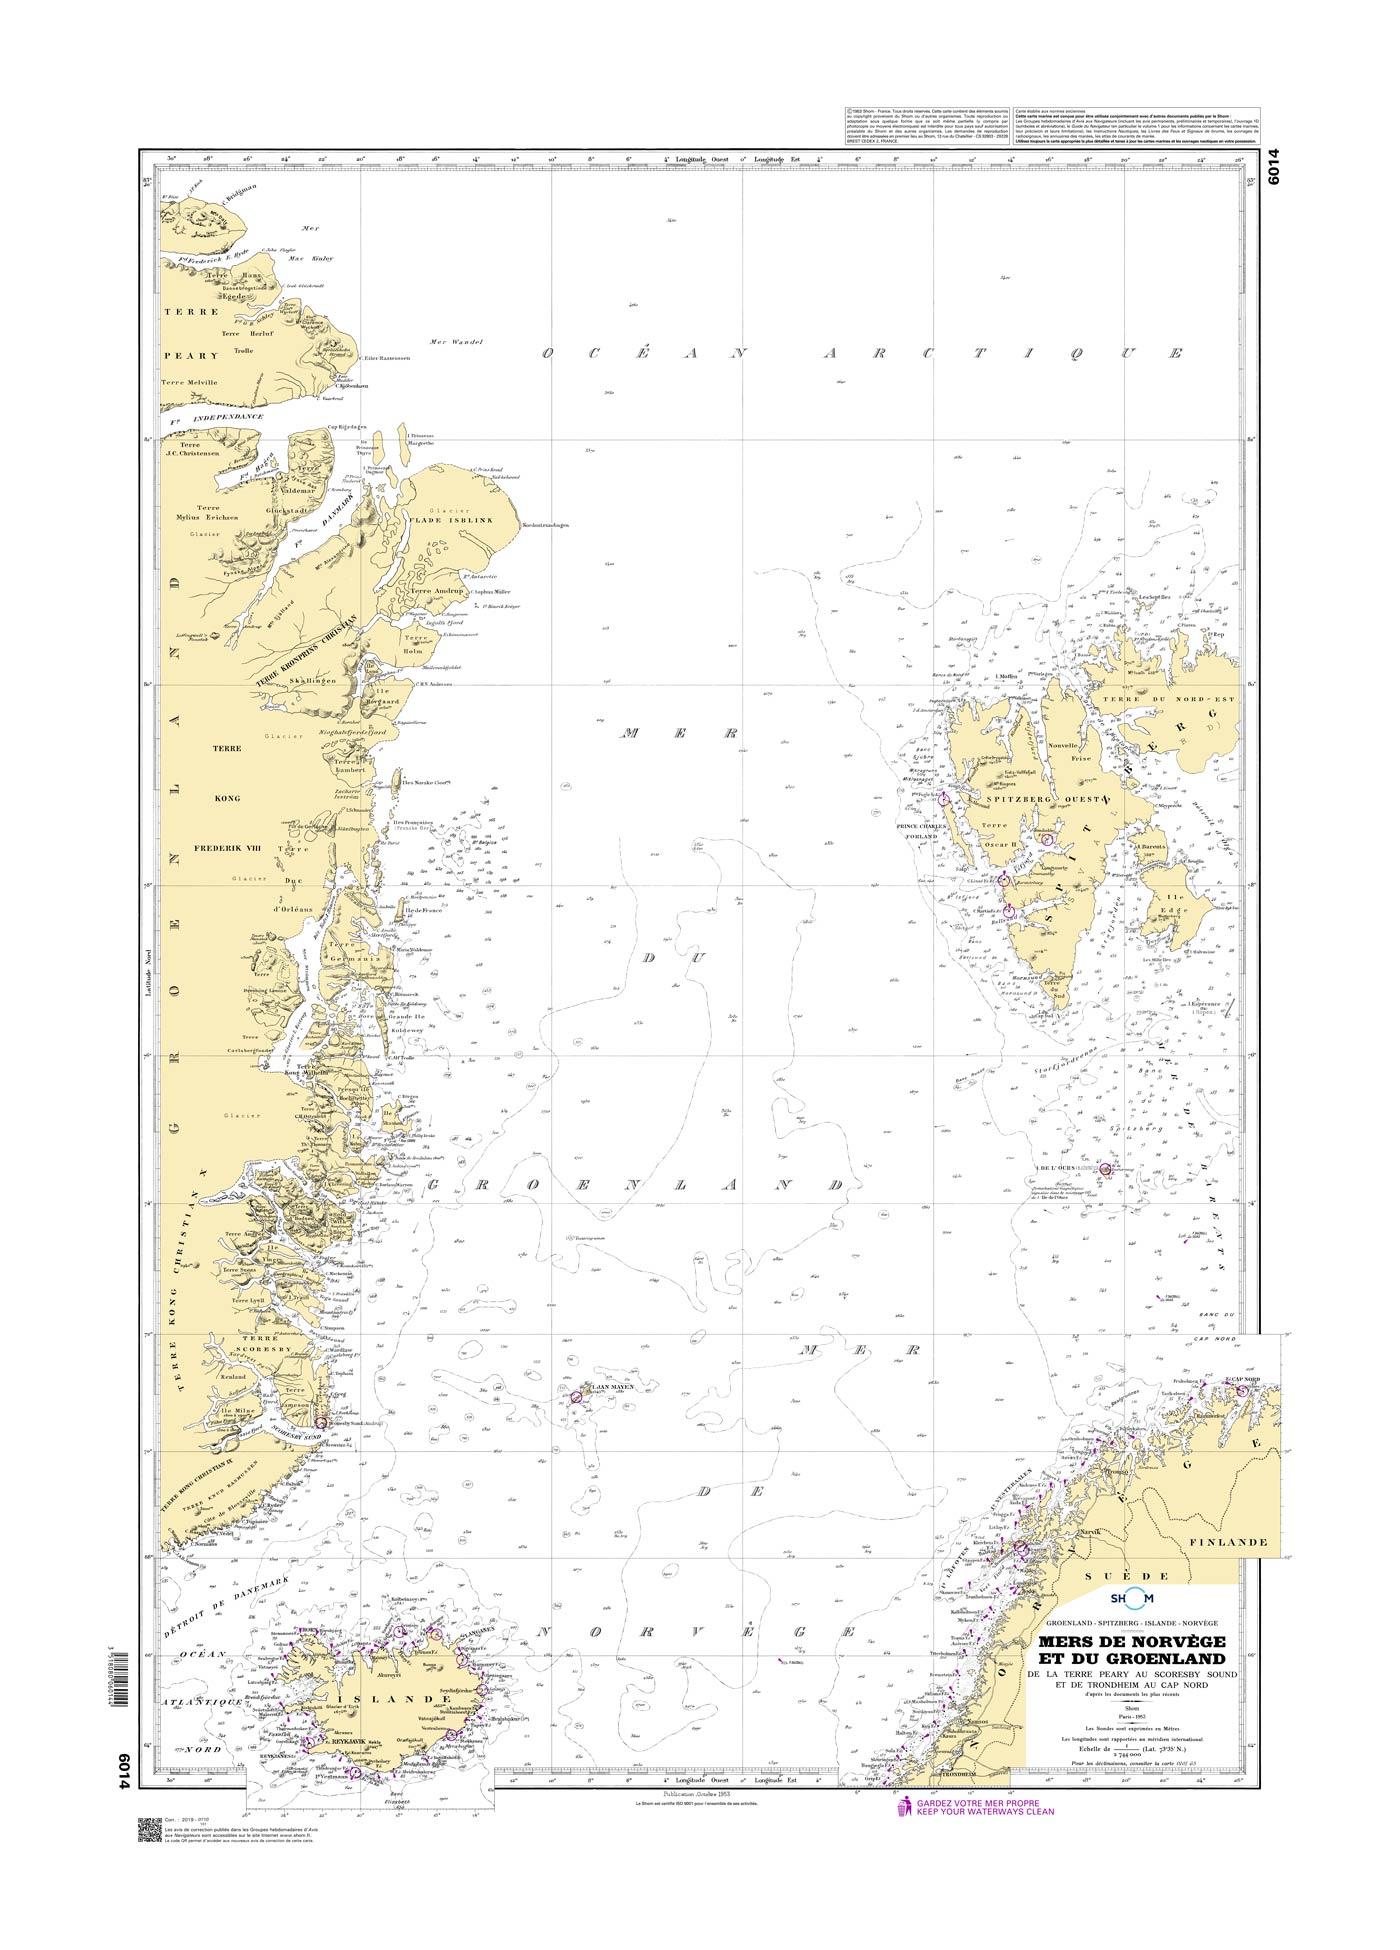 Shom 6014 - Mers de Norvège et du Groenland - De la Terre Peary au Scoresby Sound et de Trondheim au Cap Nord